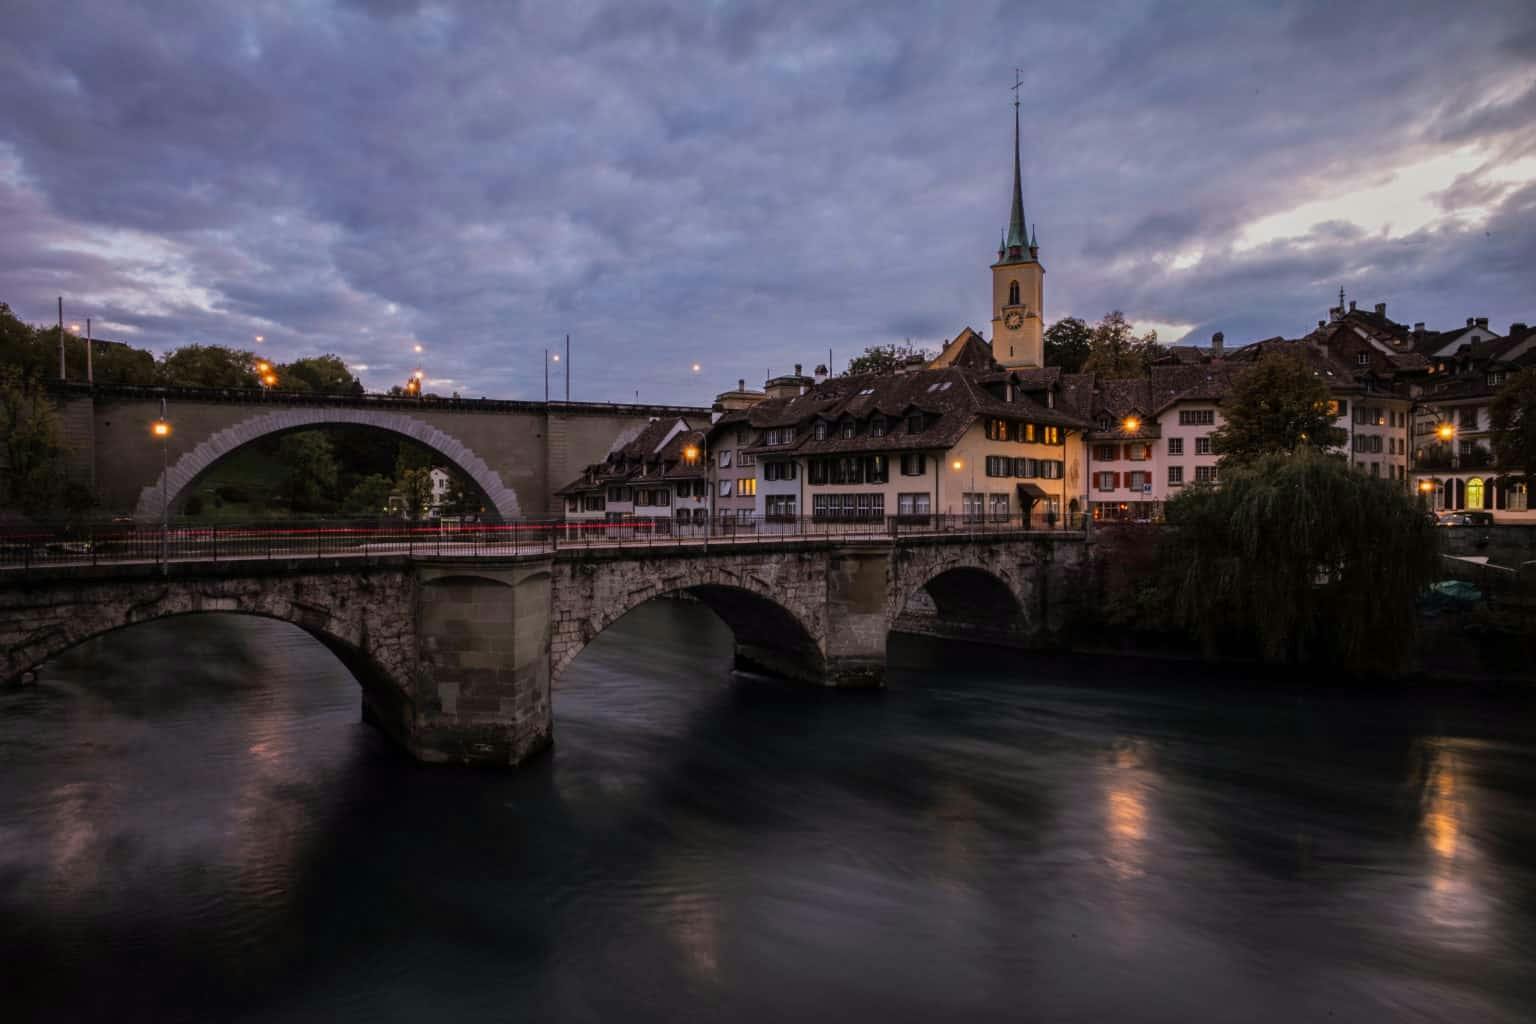 2-stündige romantische Tour in Bern